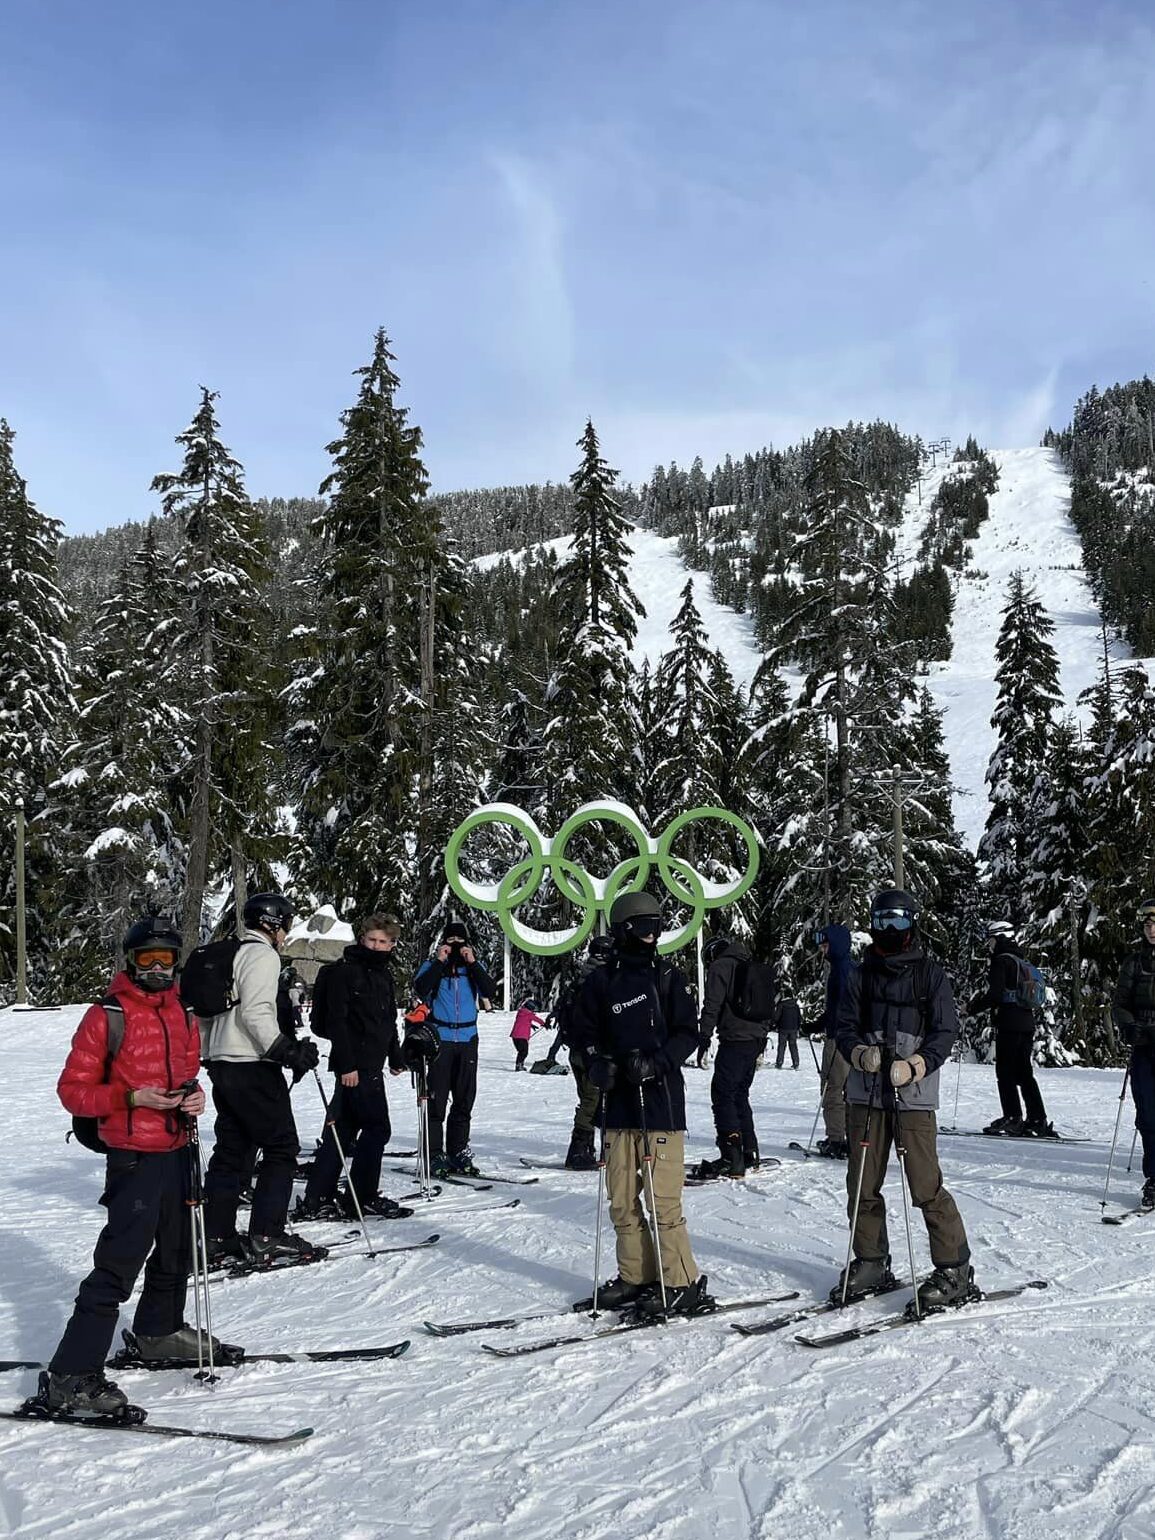 Efterskoleelever står på ski med 5 olympiske ringe bag dem